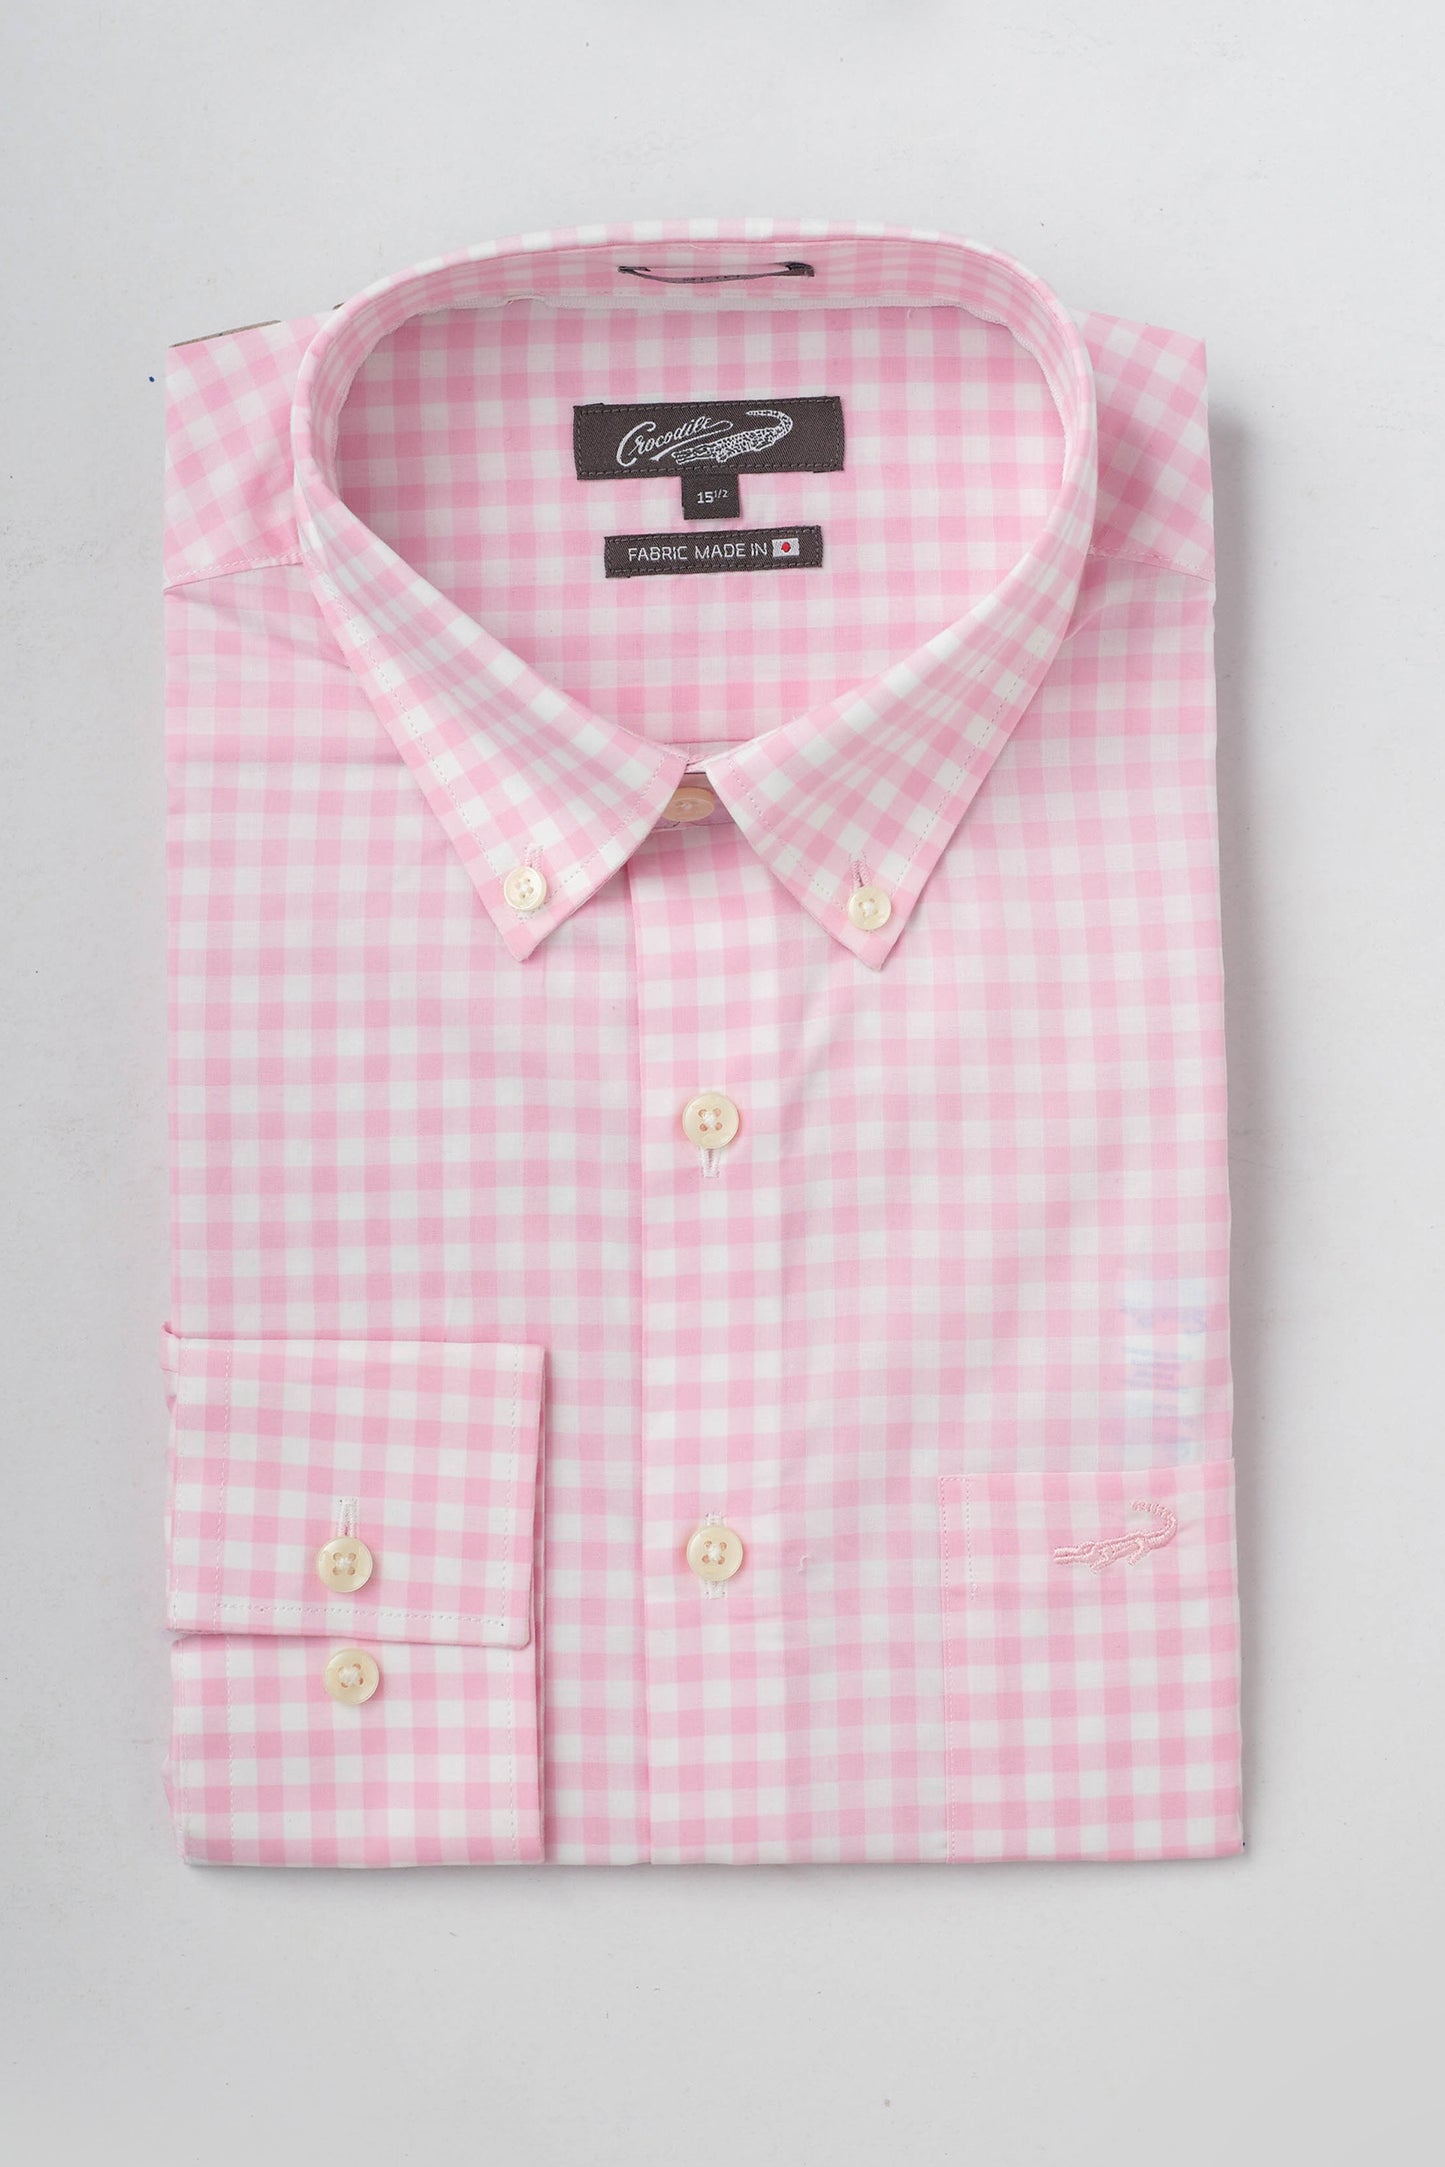 Slim Fit-Casual Shirts-L Pink